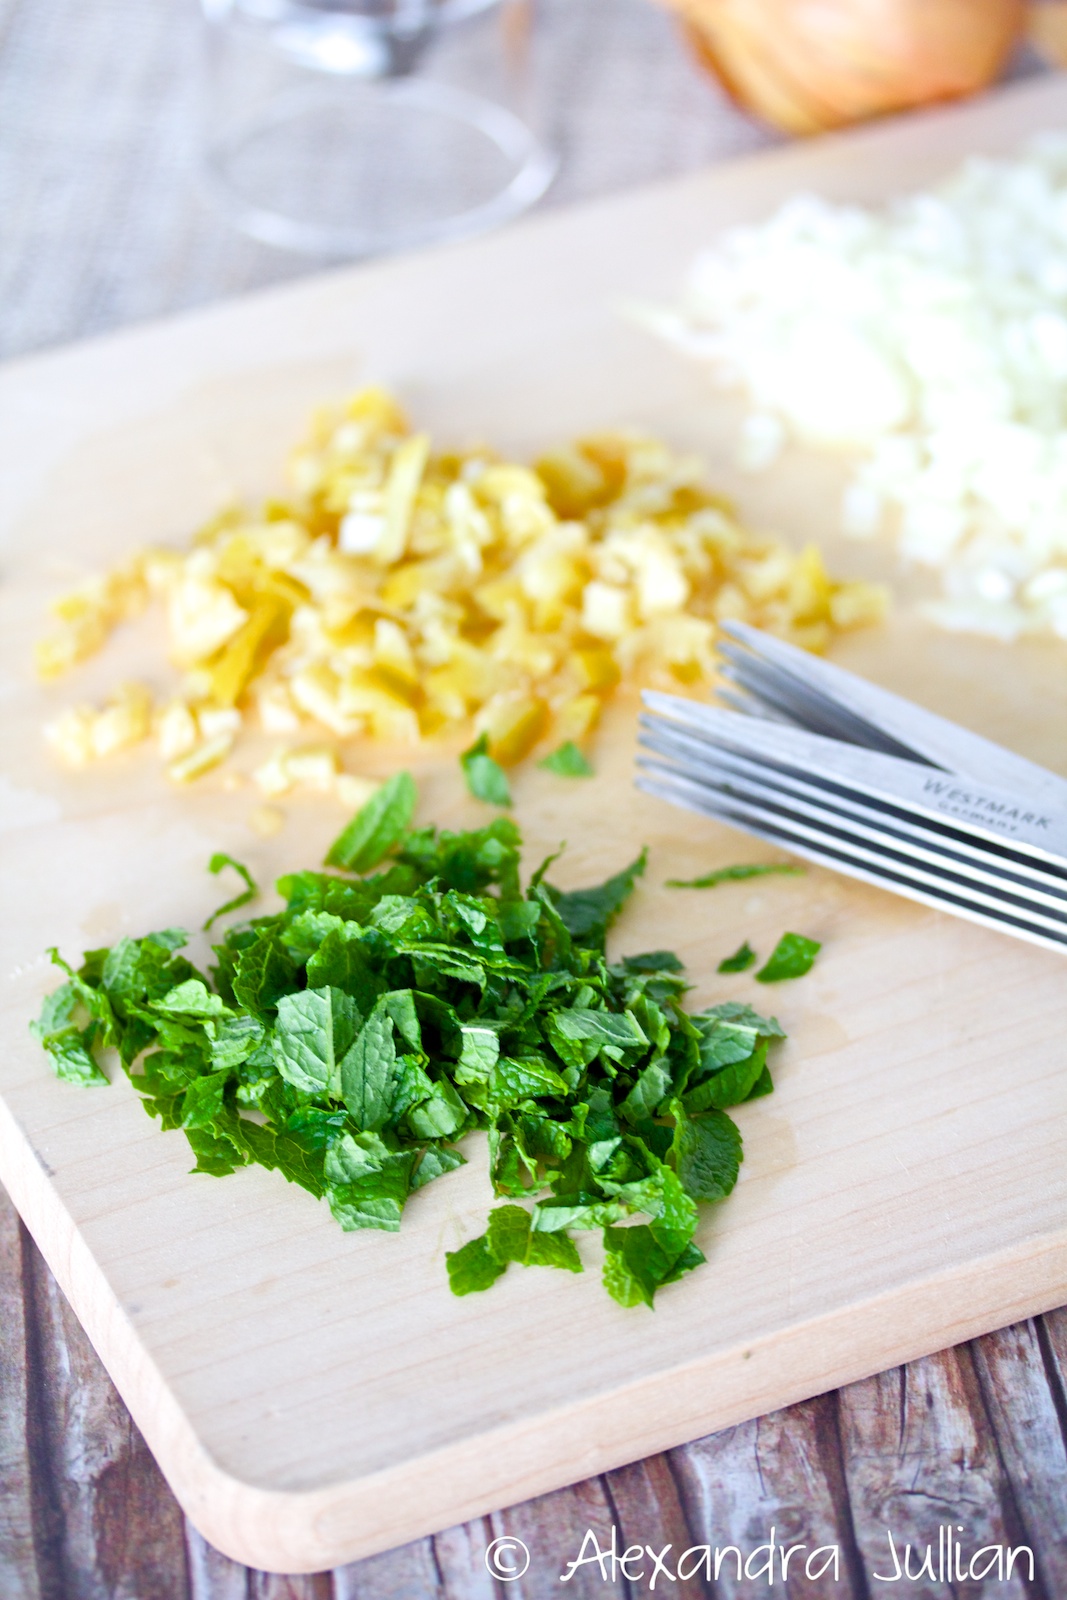 Salade fraîche de poix chiches à la menthe et au citron confit